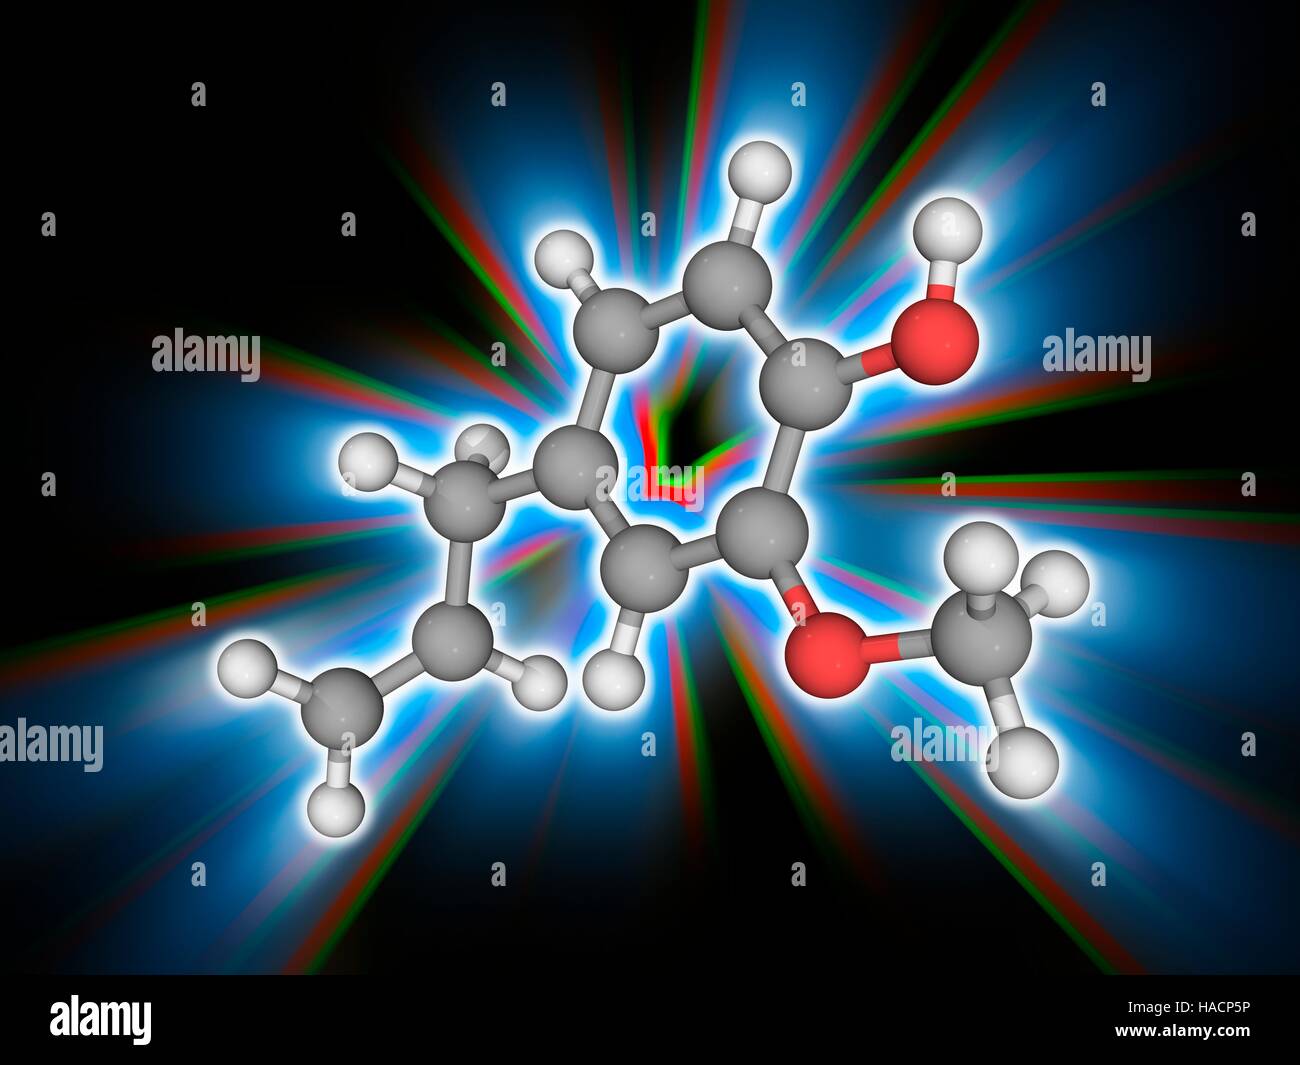 Eugenolo. Il modello molecolare della sostanza chimica phenylpropene eugenolo (C10.H12.O2). Si tratta di un colore giallo pallido liquido oleoso estratto da alcuni oli essenziali, soprattutto da olio di chiodi di garofano, noce moscata, la cannella, basilico e foglie di alloro. Esso è utilizzato in profumi e come aromatizzante. Gli atomi sono rappresentati da sfere e sono codificati a colori: carbonio (grigio), Idrogeno (bianco) e ossigeno (rosso). Illustrazione. Foto Stock